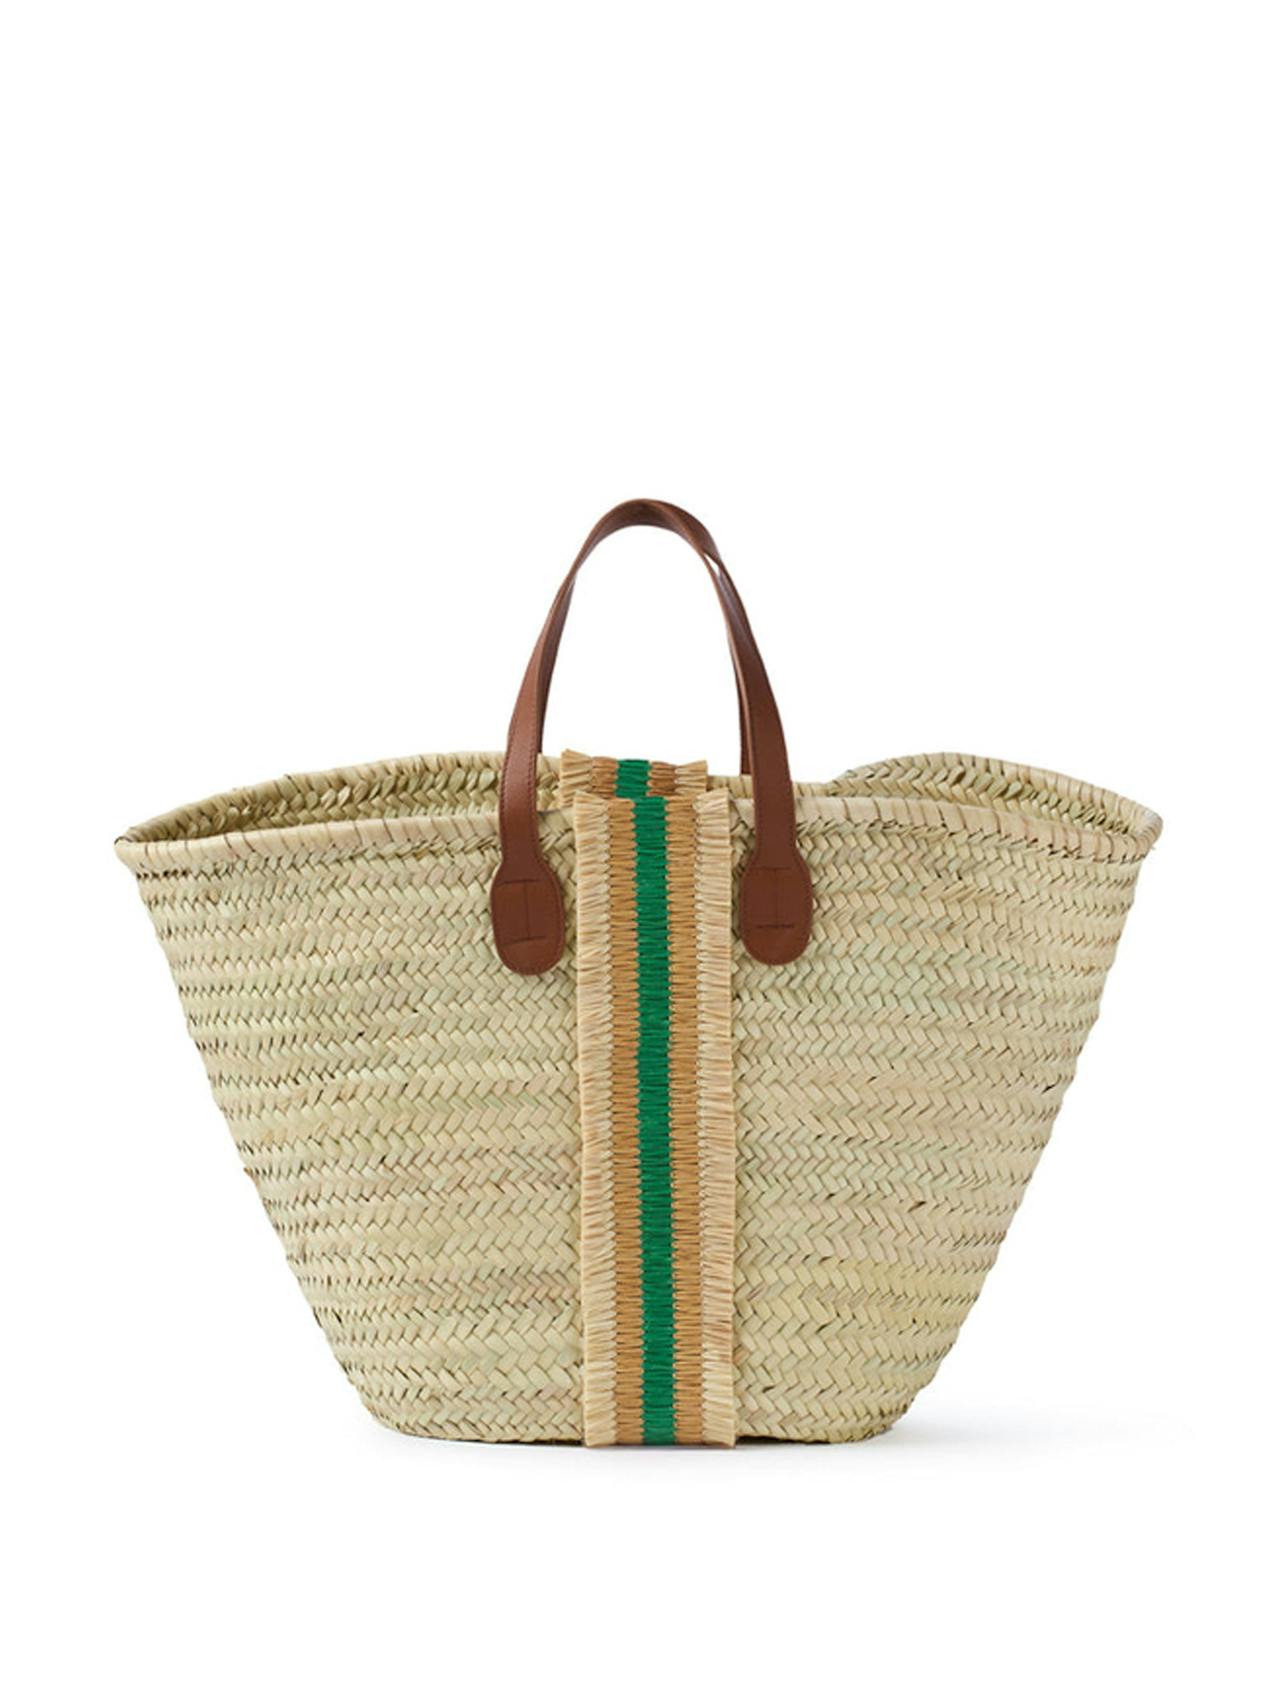 Freya personalised long handle basket